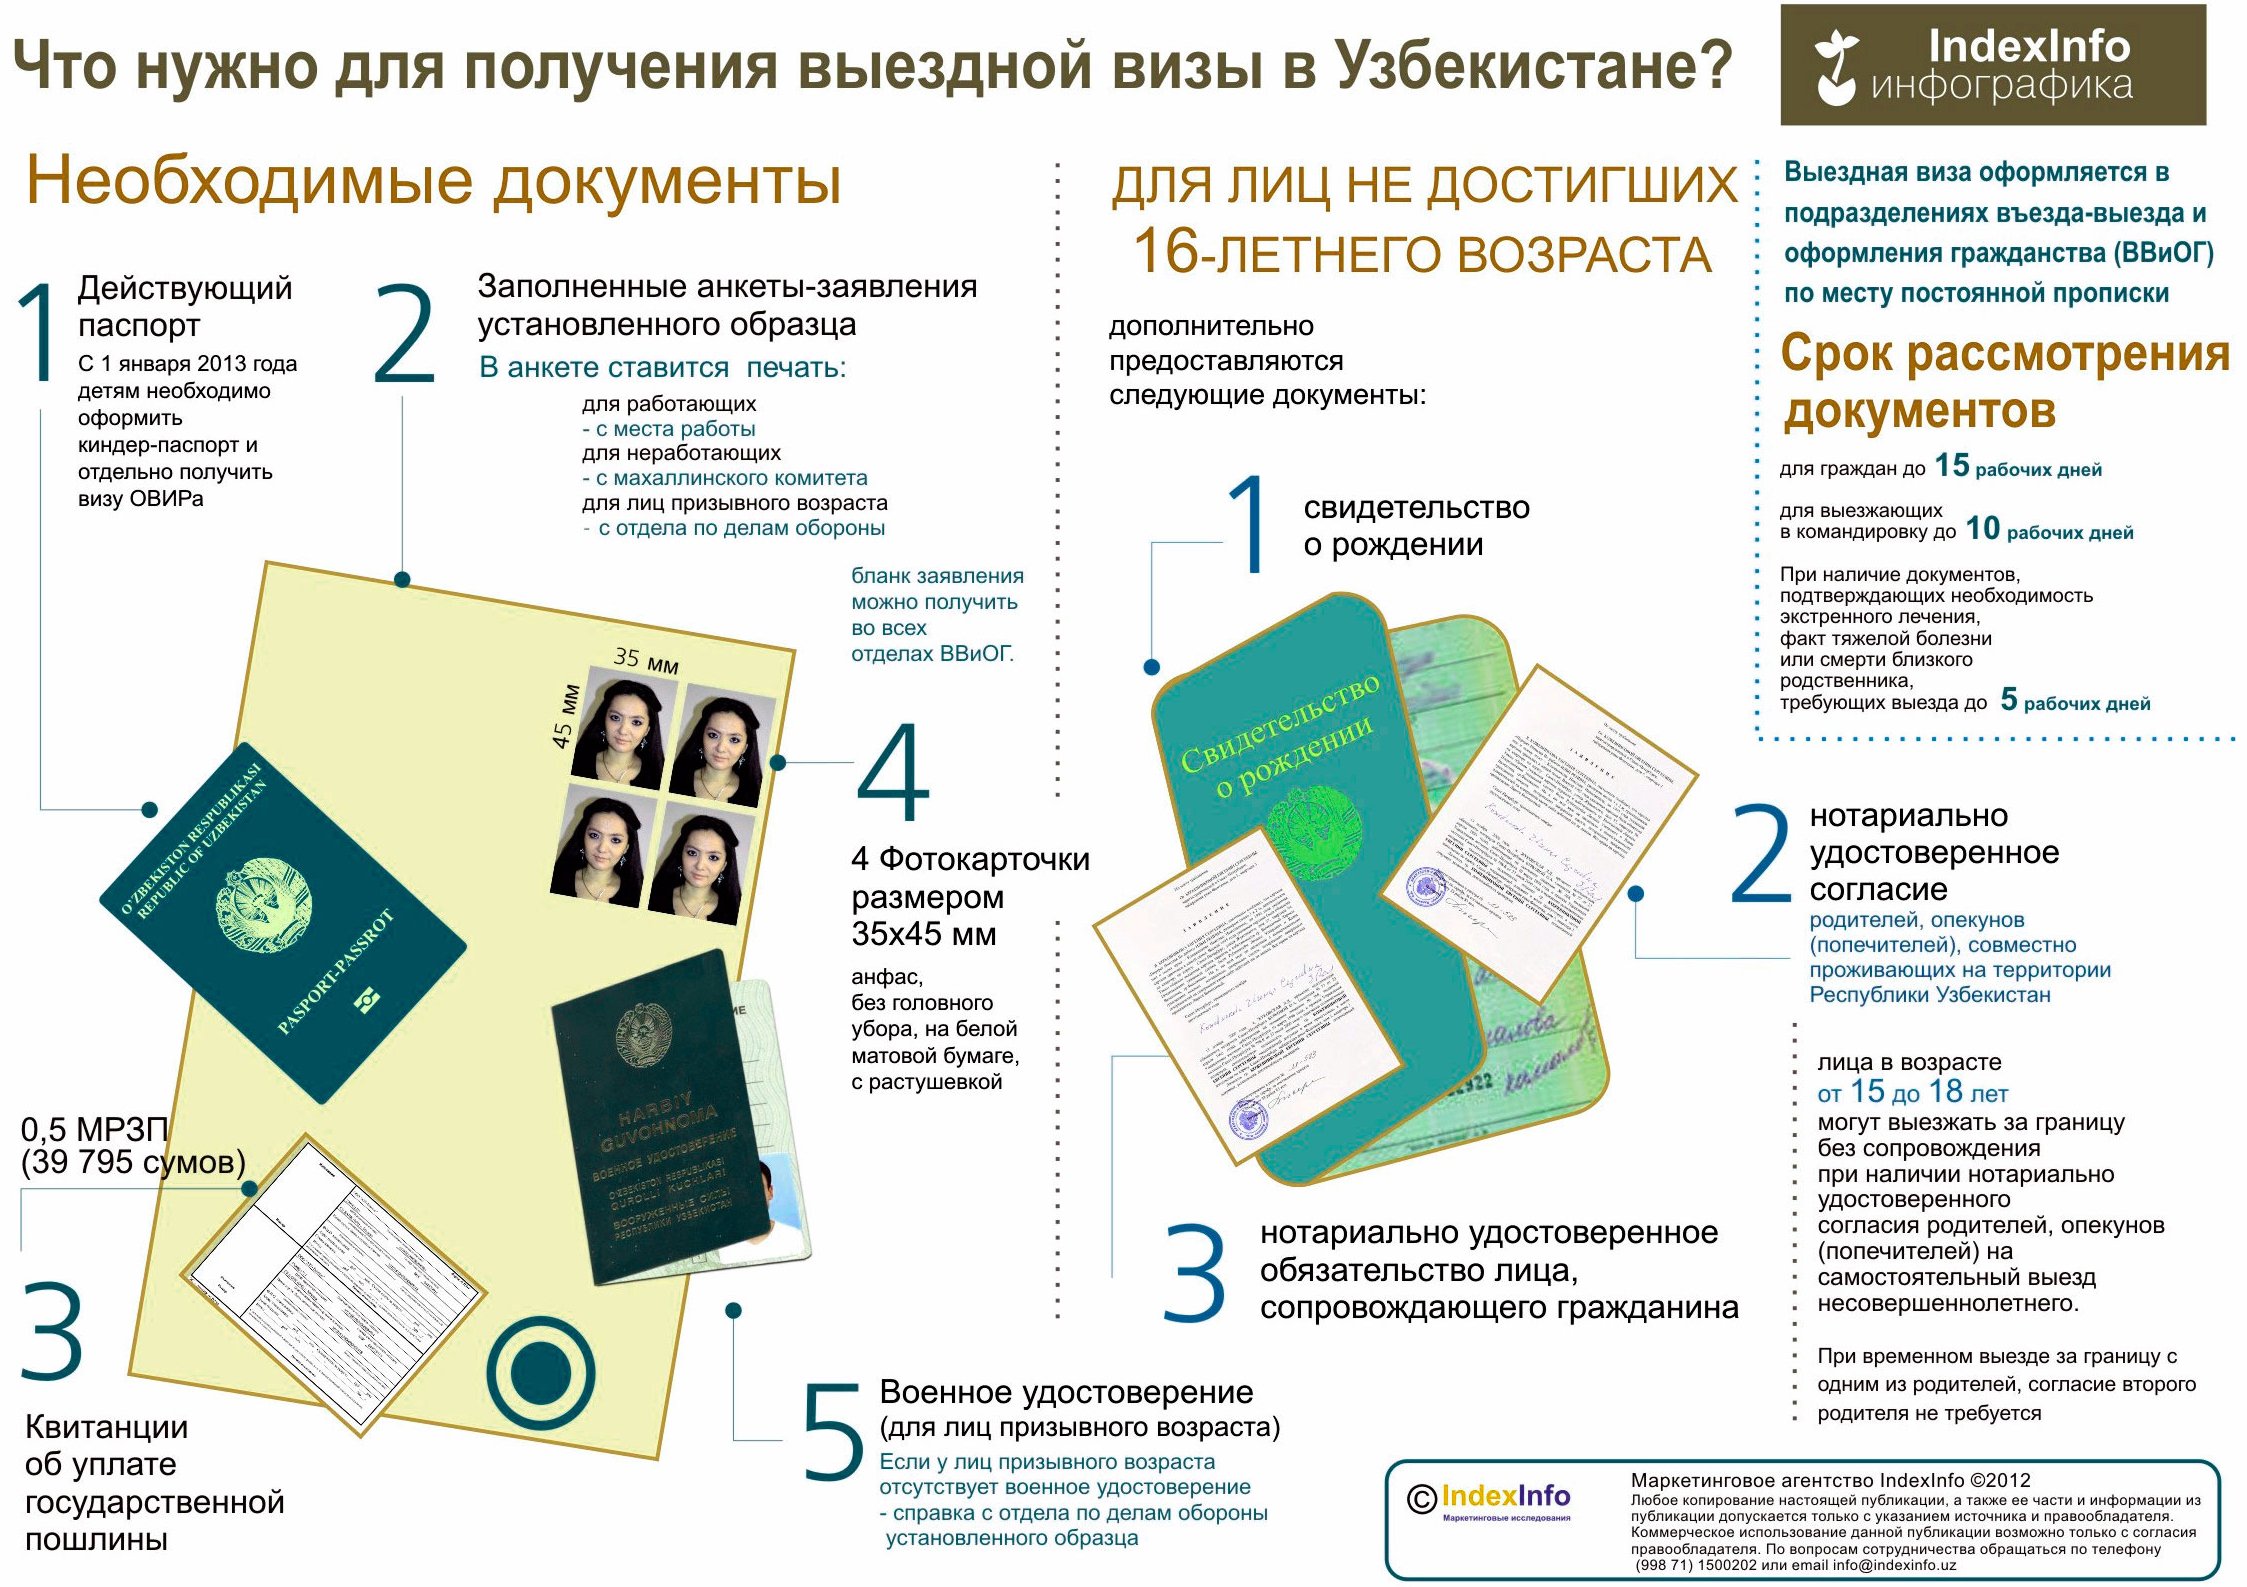 vyiezdnaya viza v Uzbekistane - Пакет документов для выездной визы